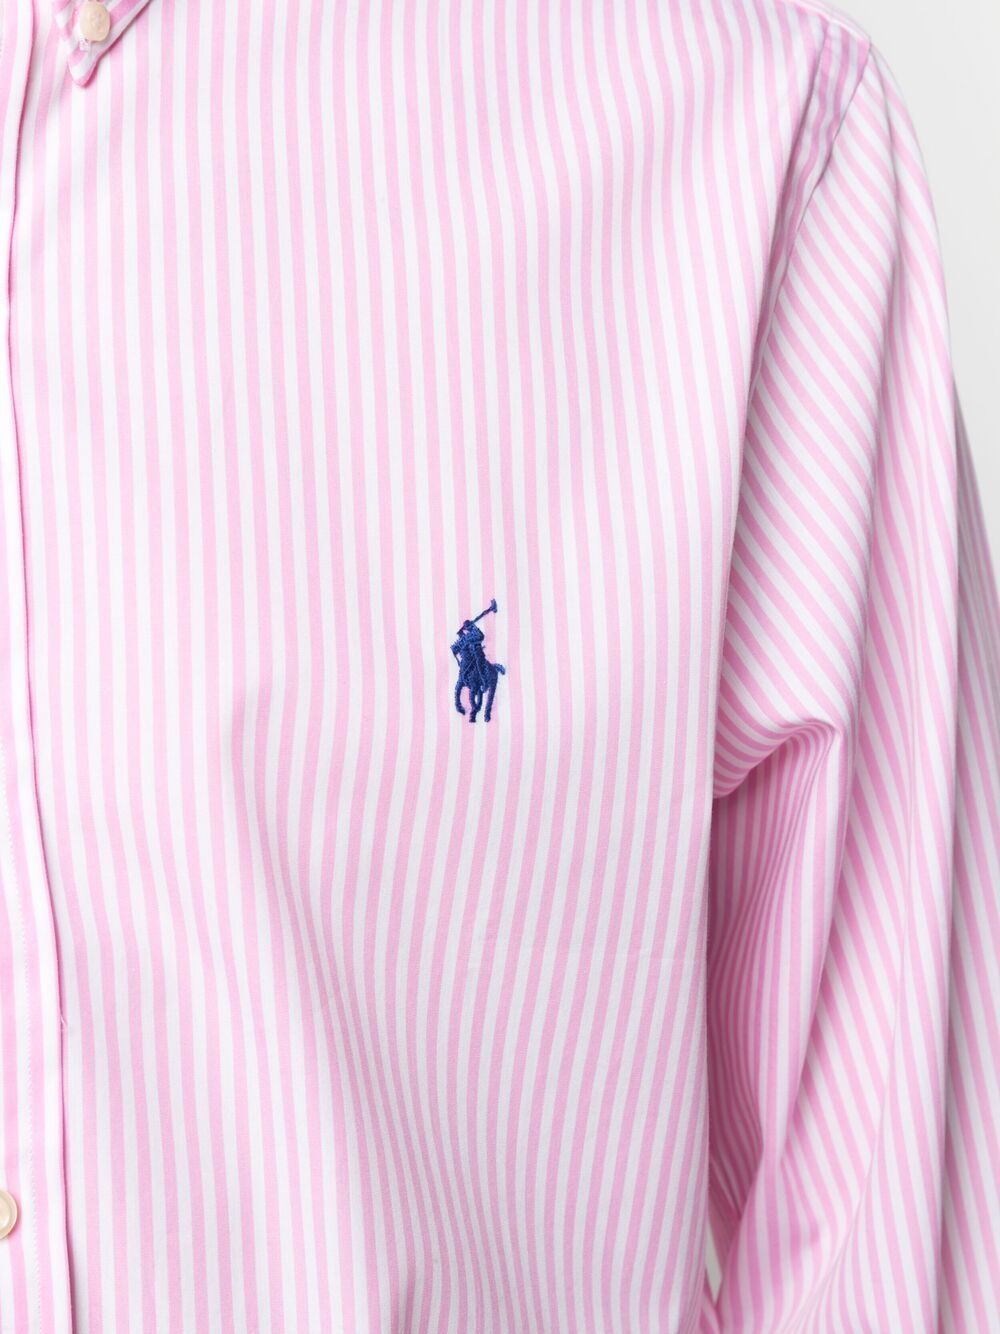 фото Polo ralph lauren полосатая рубашка с вышитым логотипом